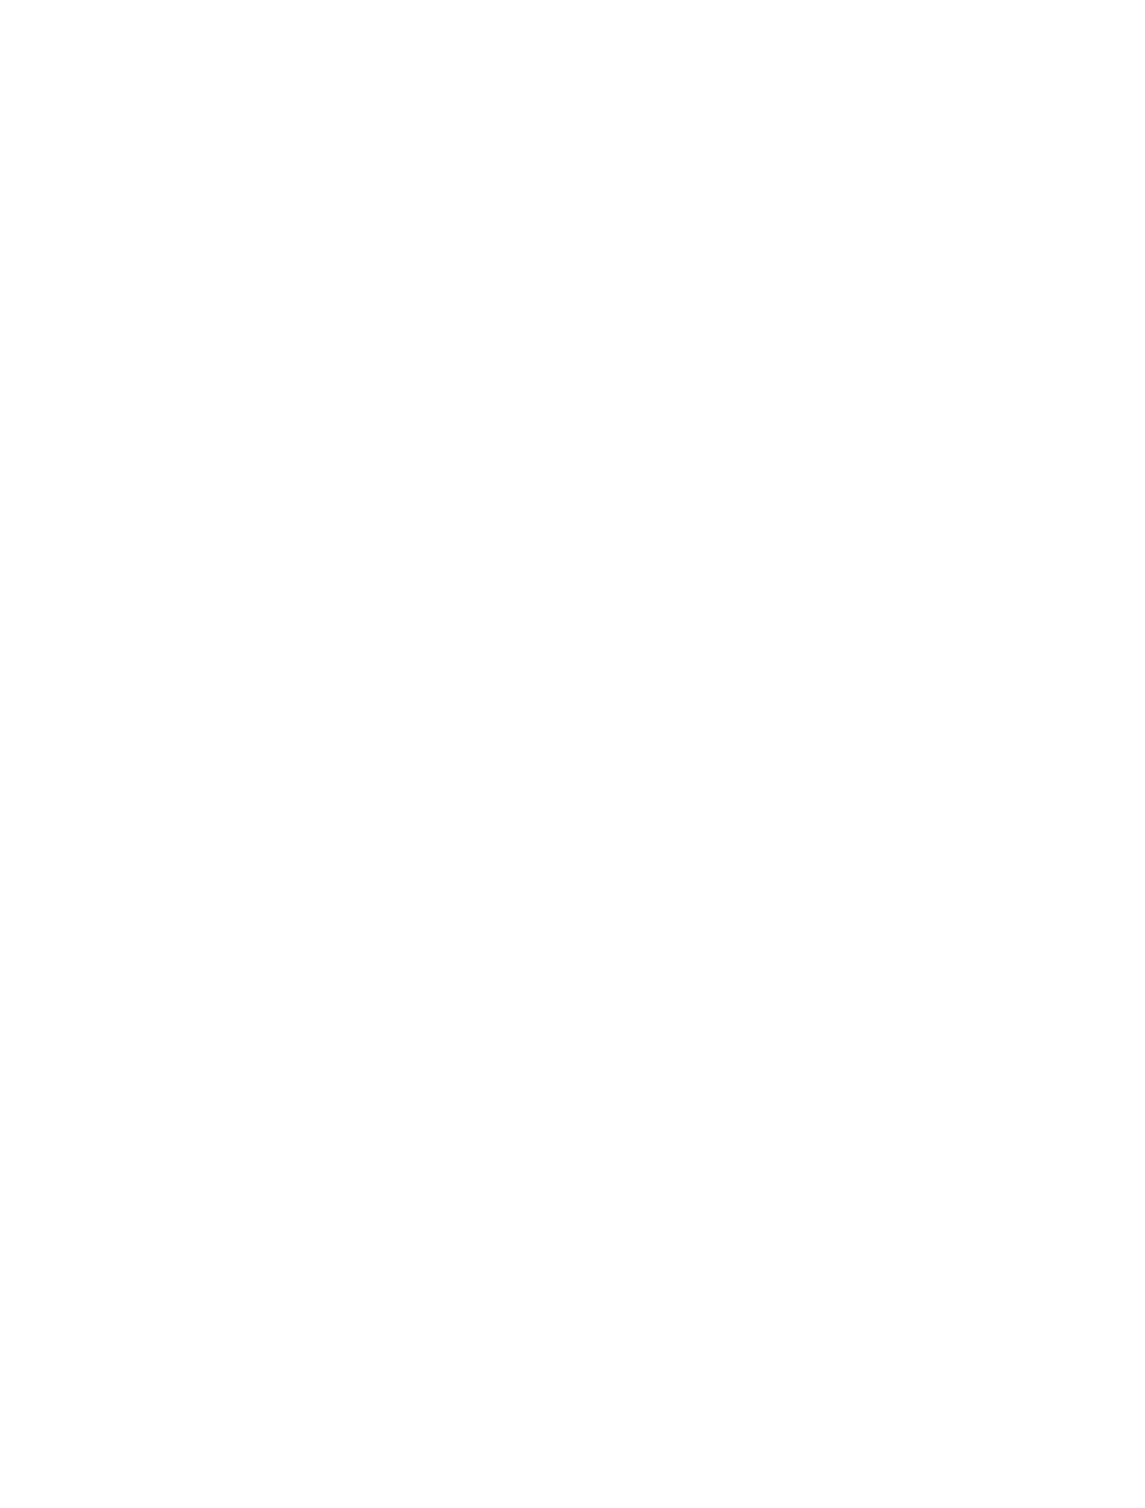 J.S.B.Co. logo grand pour les fonds sombres (PNG transparent)